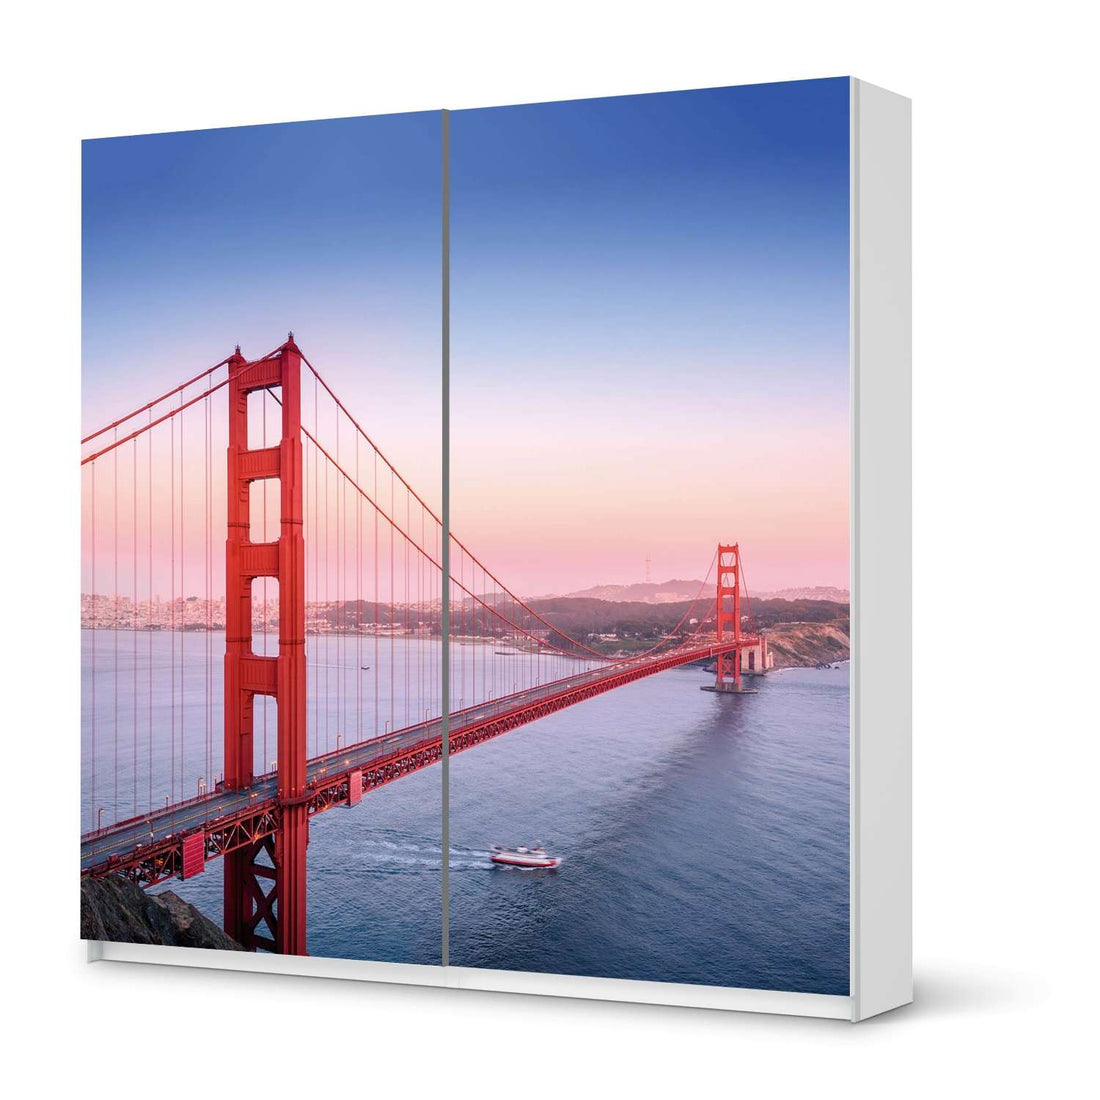 Möbel Klebefolie Golden Gate - IKEA Pax Schrank 201 cm Höhe - Schiebetür - weiss